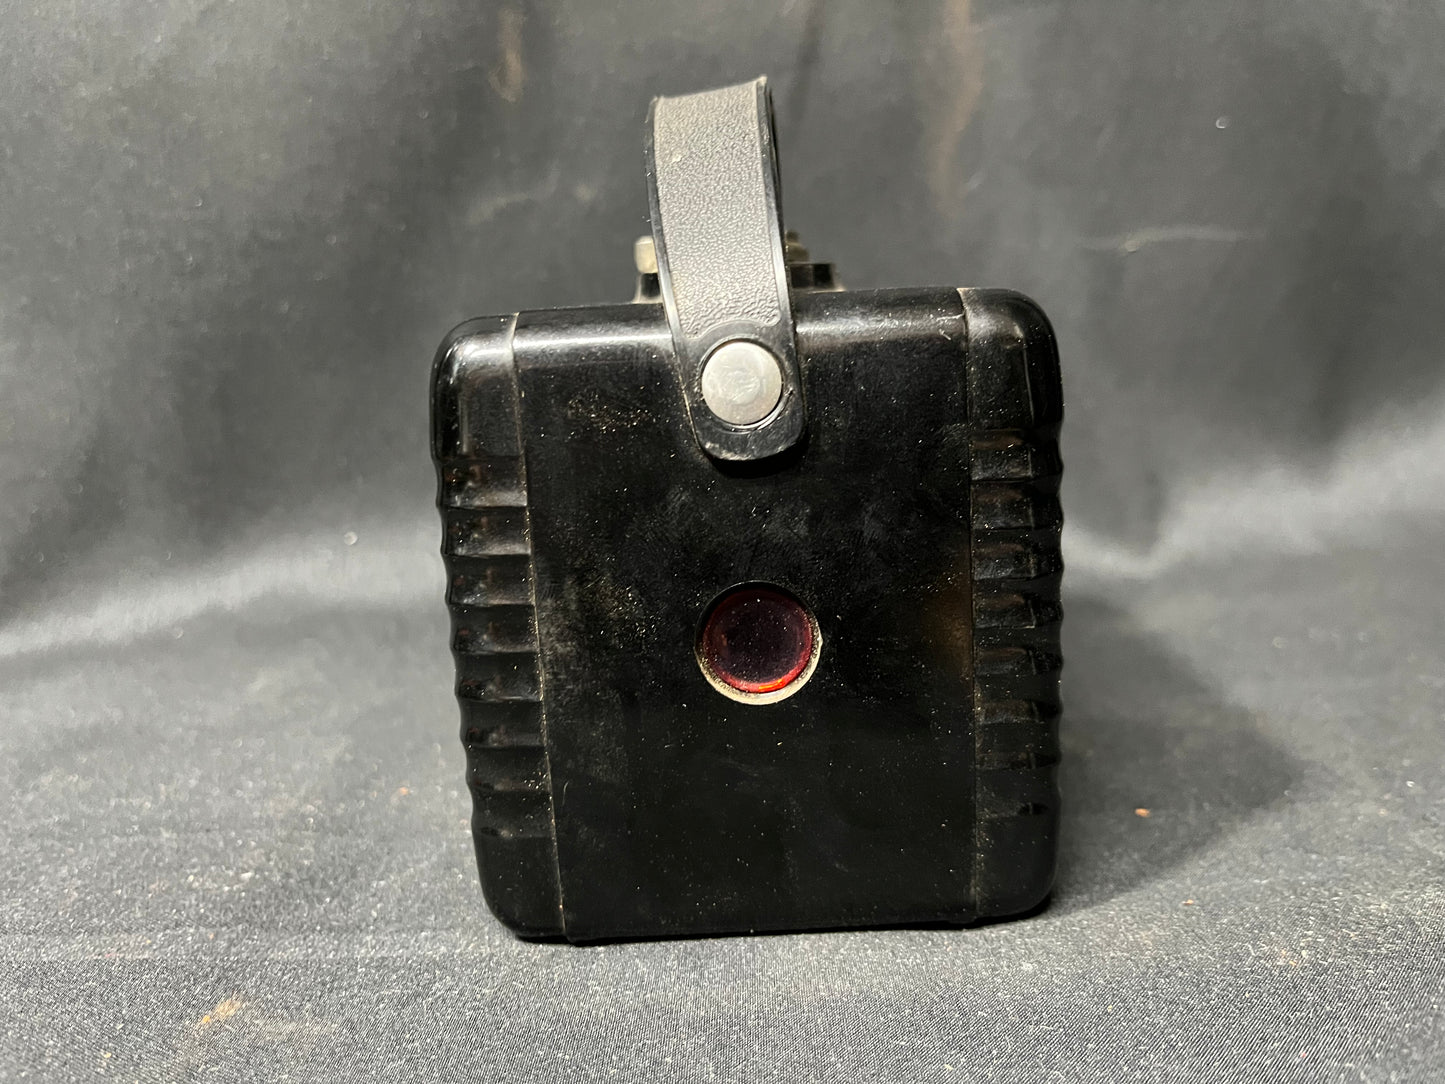 Kodak Brownie Hawkeye Camera - Flash Model with Case